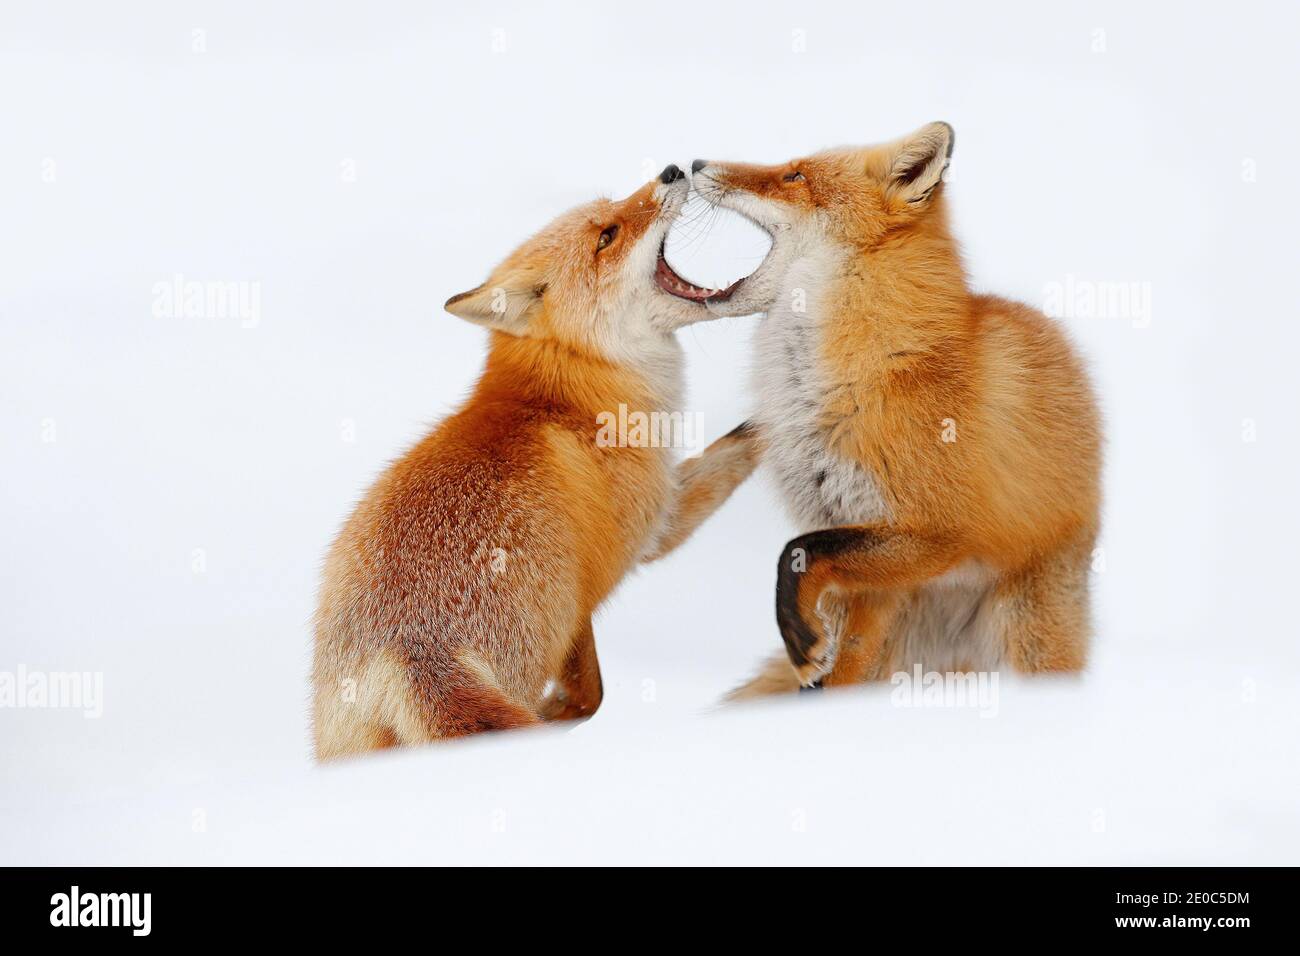 Paire de renards rouges jouant dans la neige. Moment amusant dans la nature. Scène hivernale avec animaux sauvages à fourrure d'orange. Scène de la faune de Hokkaido, Japon. Deux anim Banque D'Images